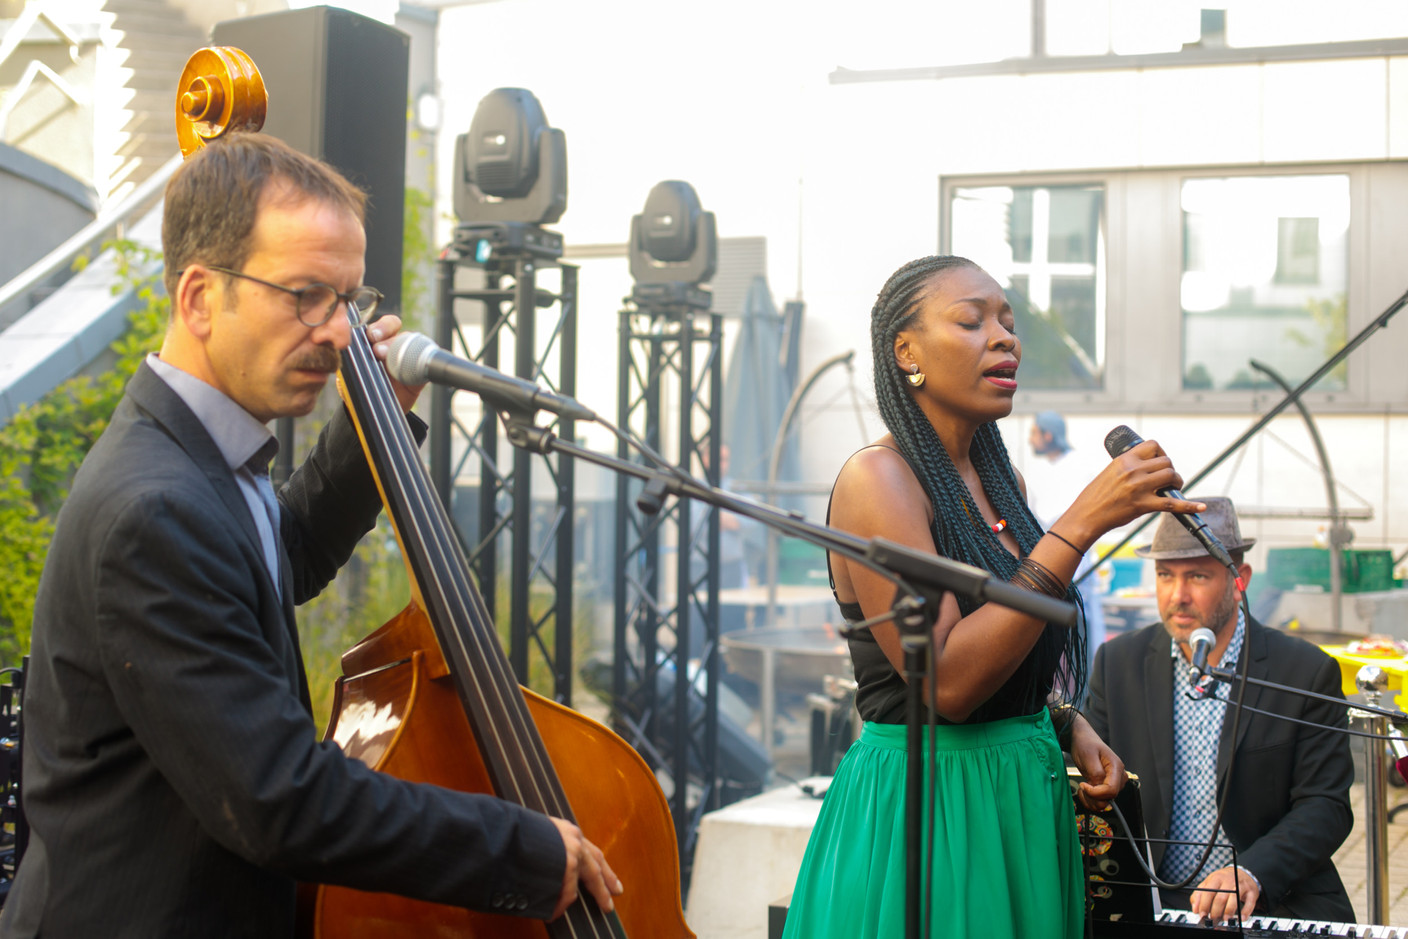 Le Naomi Jazz Trio s’est produit lors de la réception du 5e anniversaire de la Lhoft, le 8 juillet 2022. (Photo: Matic Zorman/Maison Moderne)